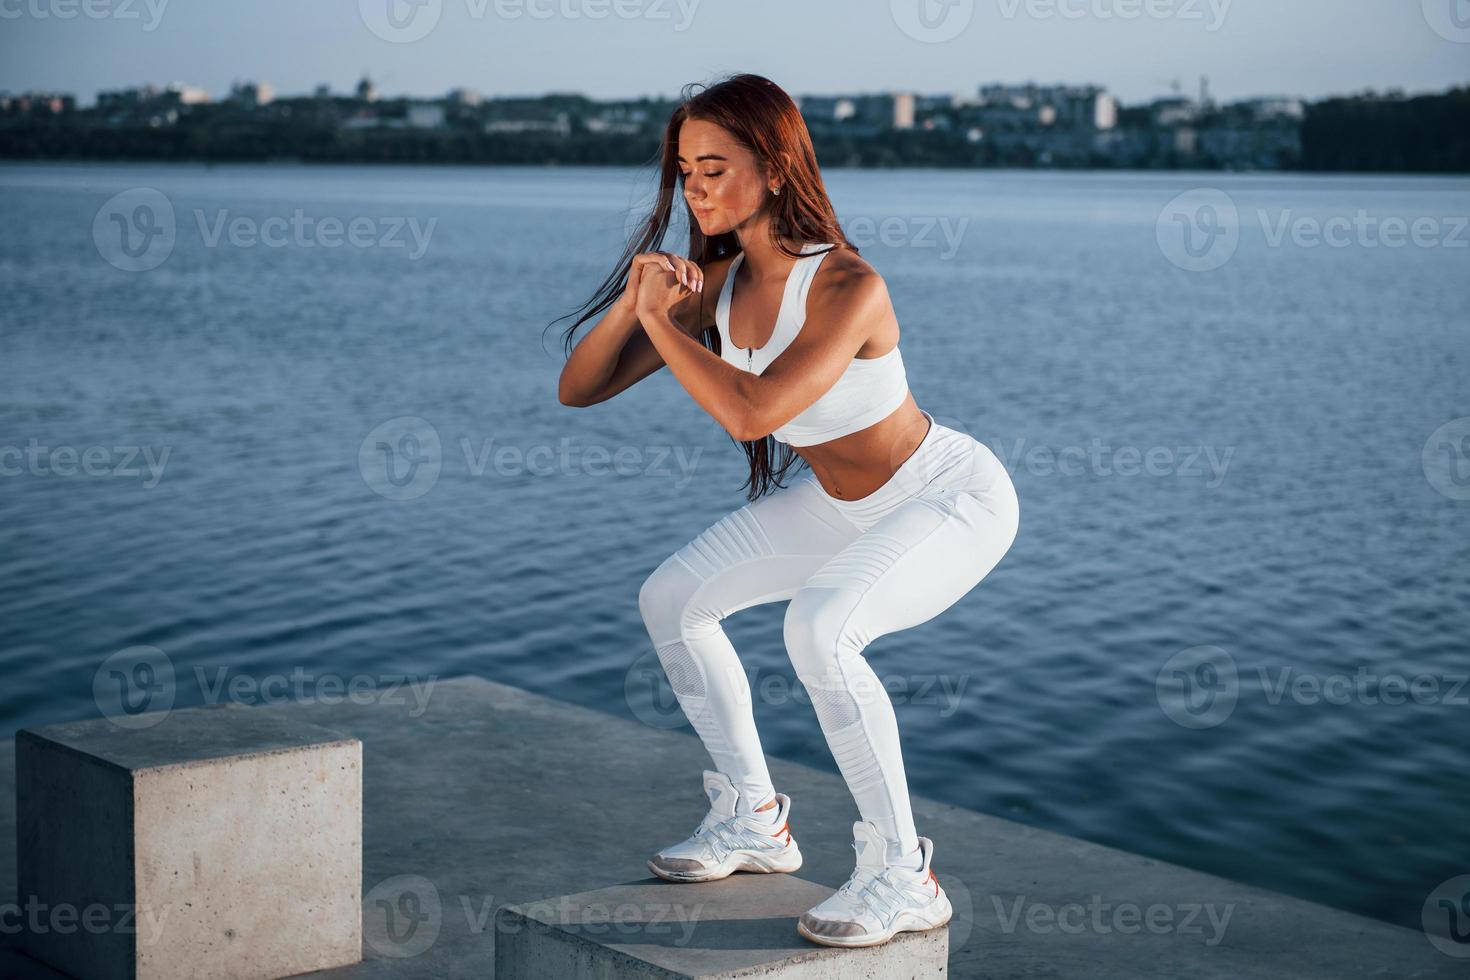 haciendo sentadillas en el cubo de cemento. foto de una mujer deportiva haciendo ejercicios de fitness cerca del lago durante el día